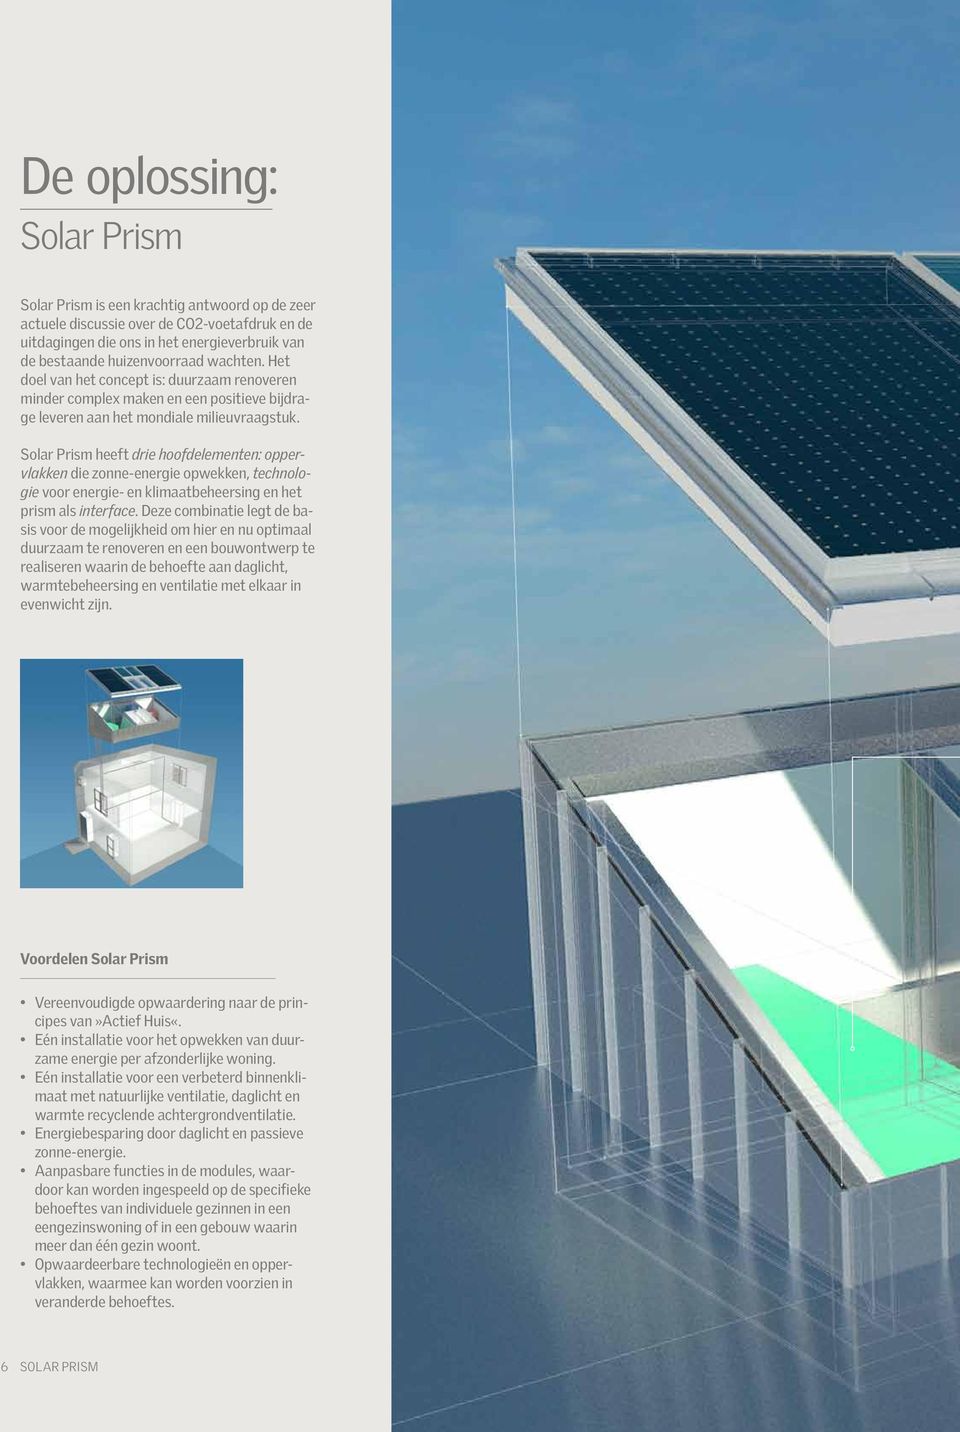 Solar Prism heeft drie hoofdelementen: oppervlakken die zonne-energie opwekken, technologie voor energie- en klimaatbeheersing en het prism als interface.